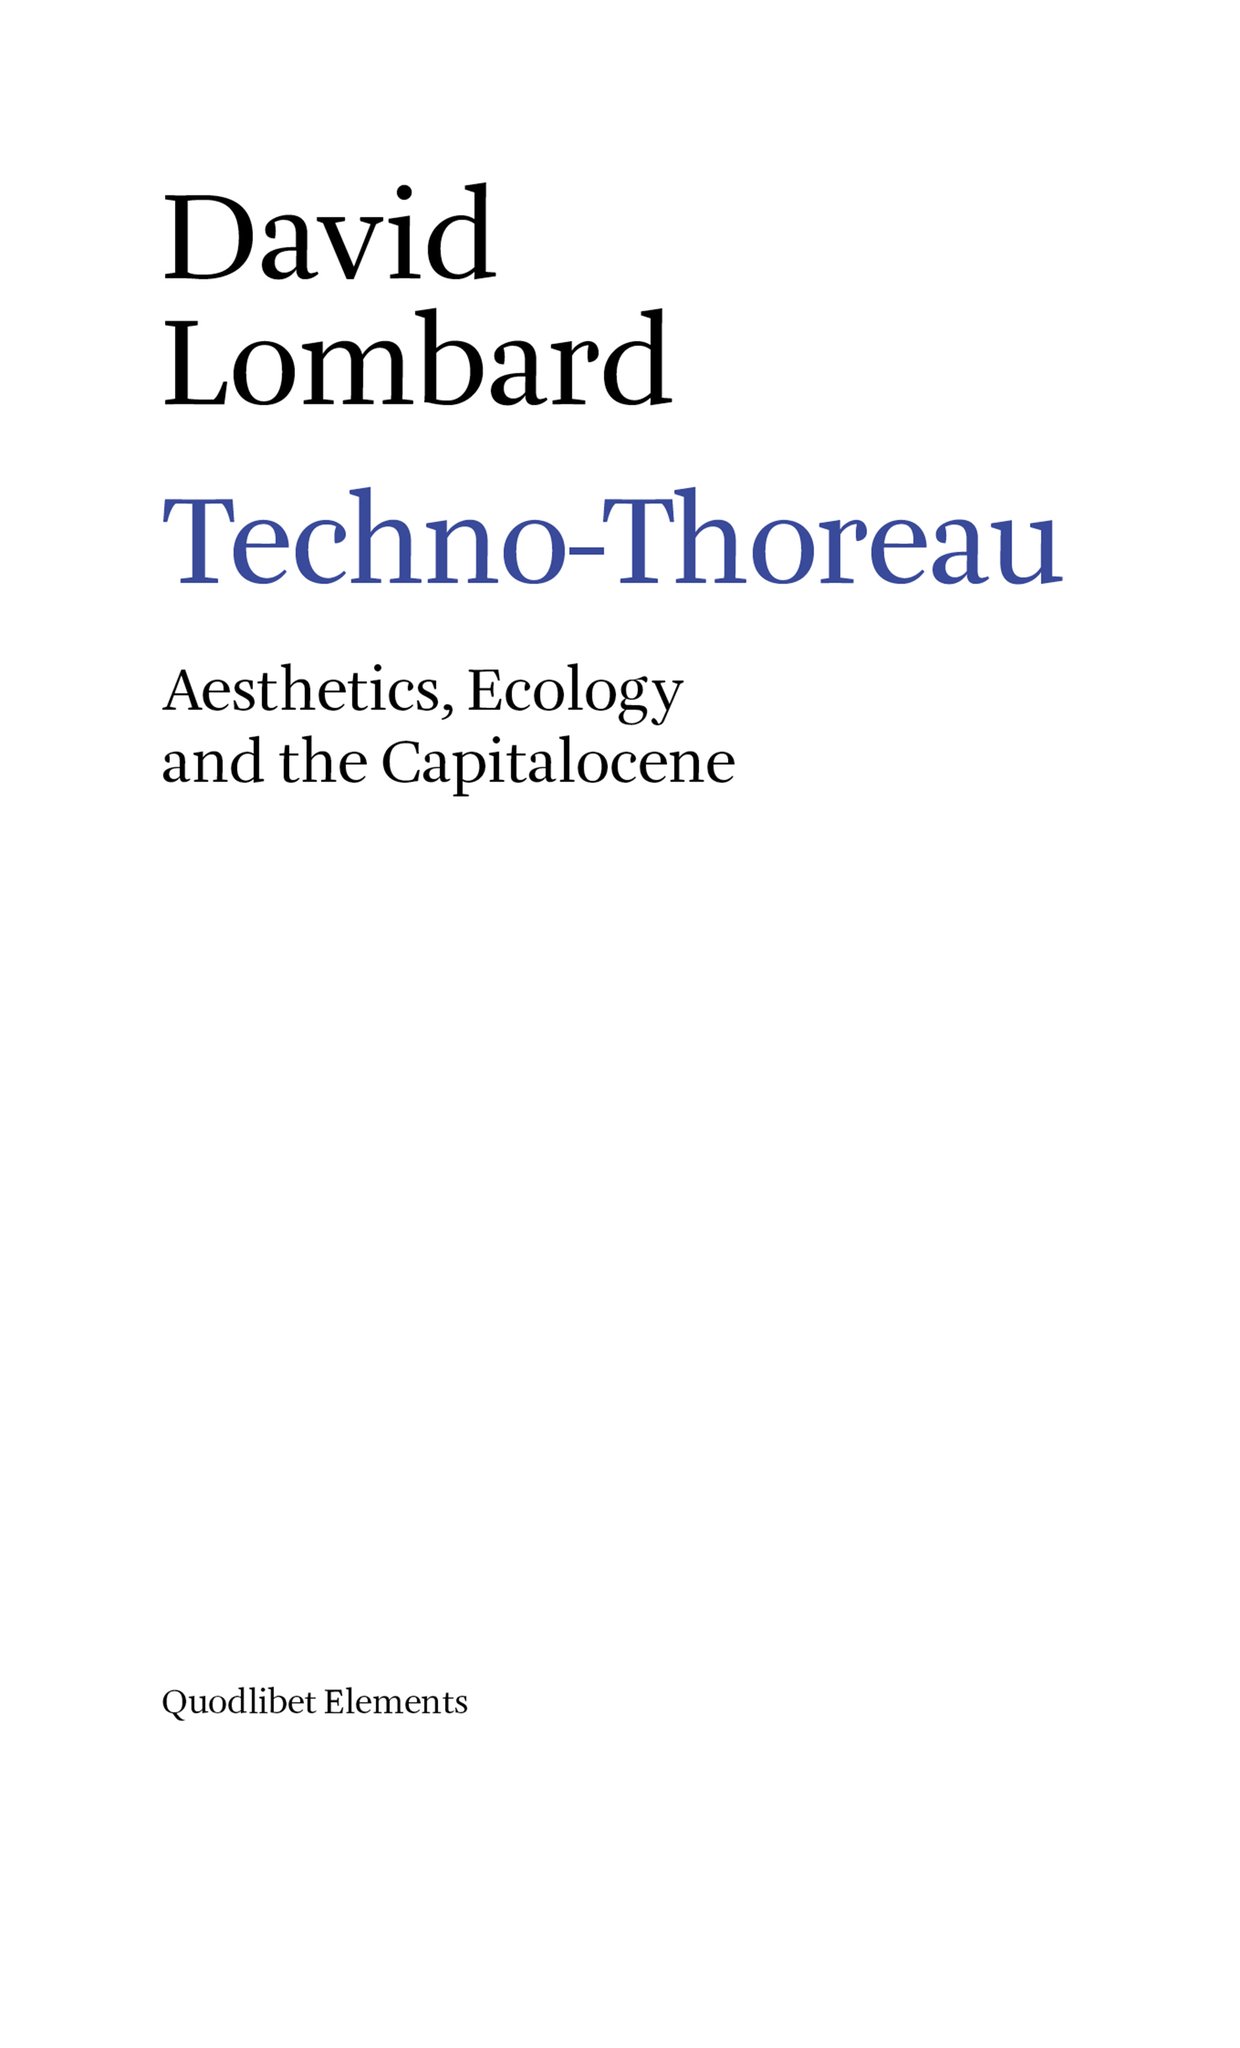 Books : Techno-Thoreau - David Lombard